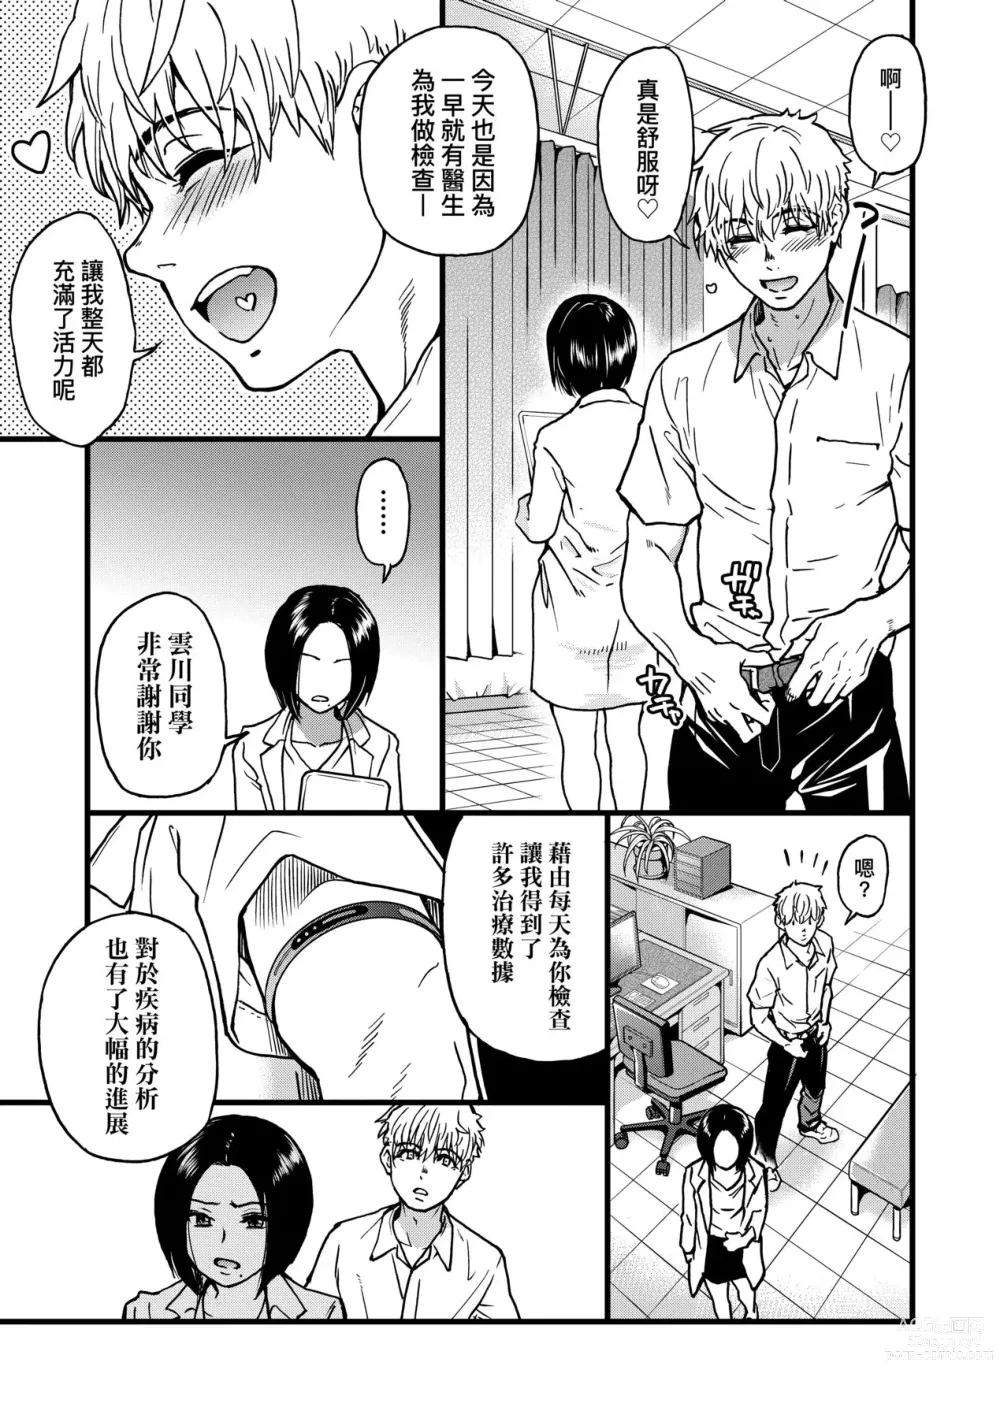 Page 278 of manga 靠我的精液本復快癒!!